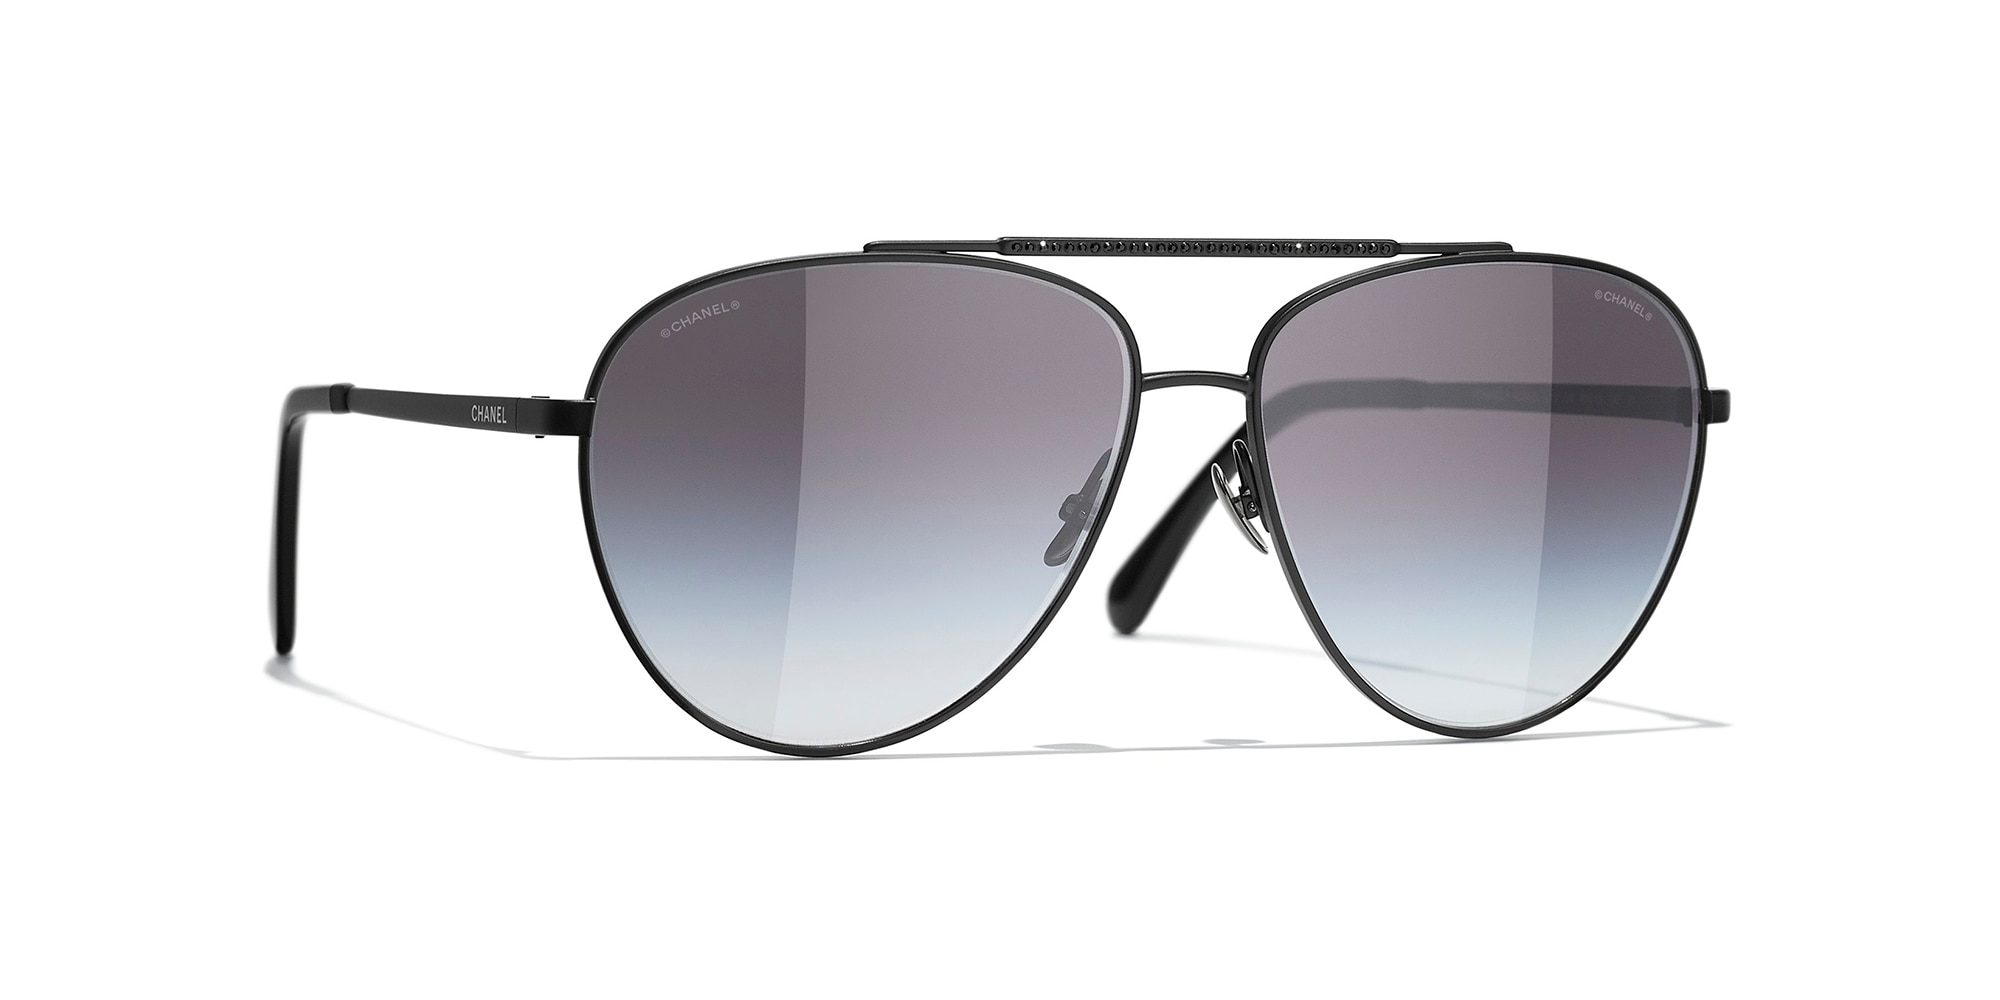 Chanel Interlocking CC Logo Aviator Sunglasses  Black Sunglasses  Accessories  CHA878645  The RealReal